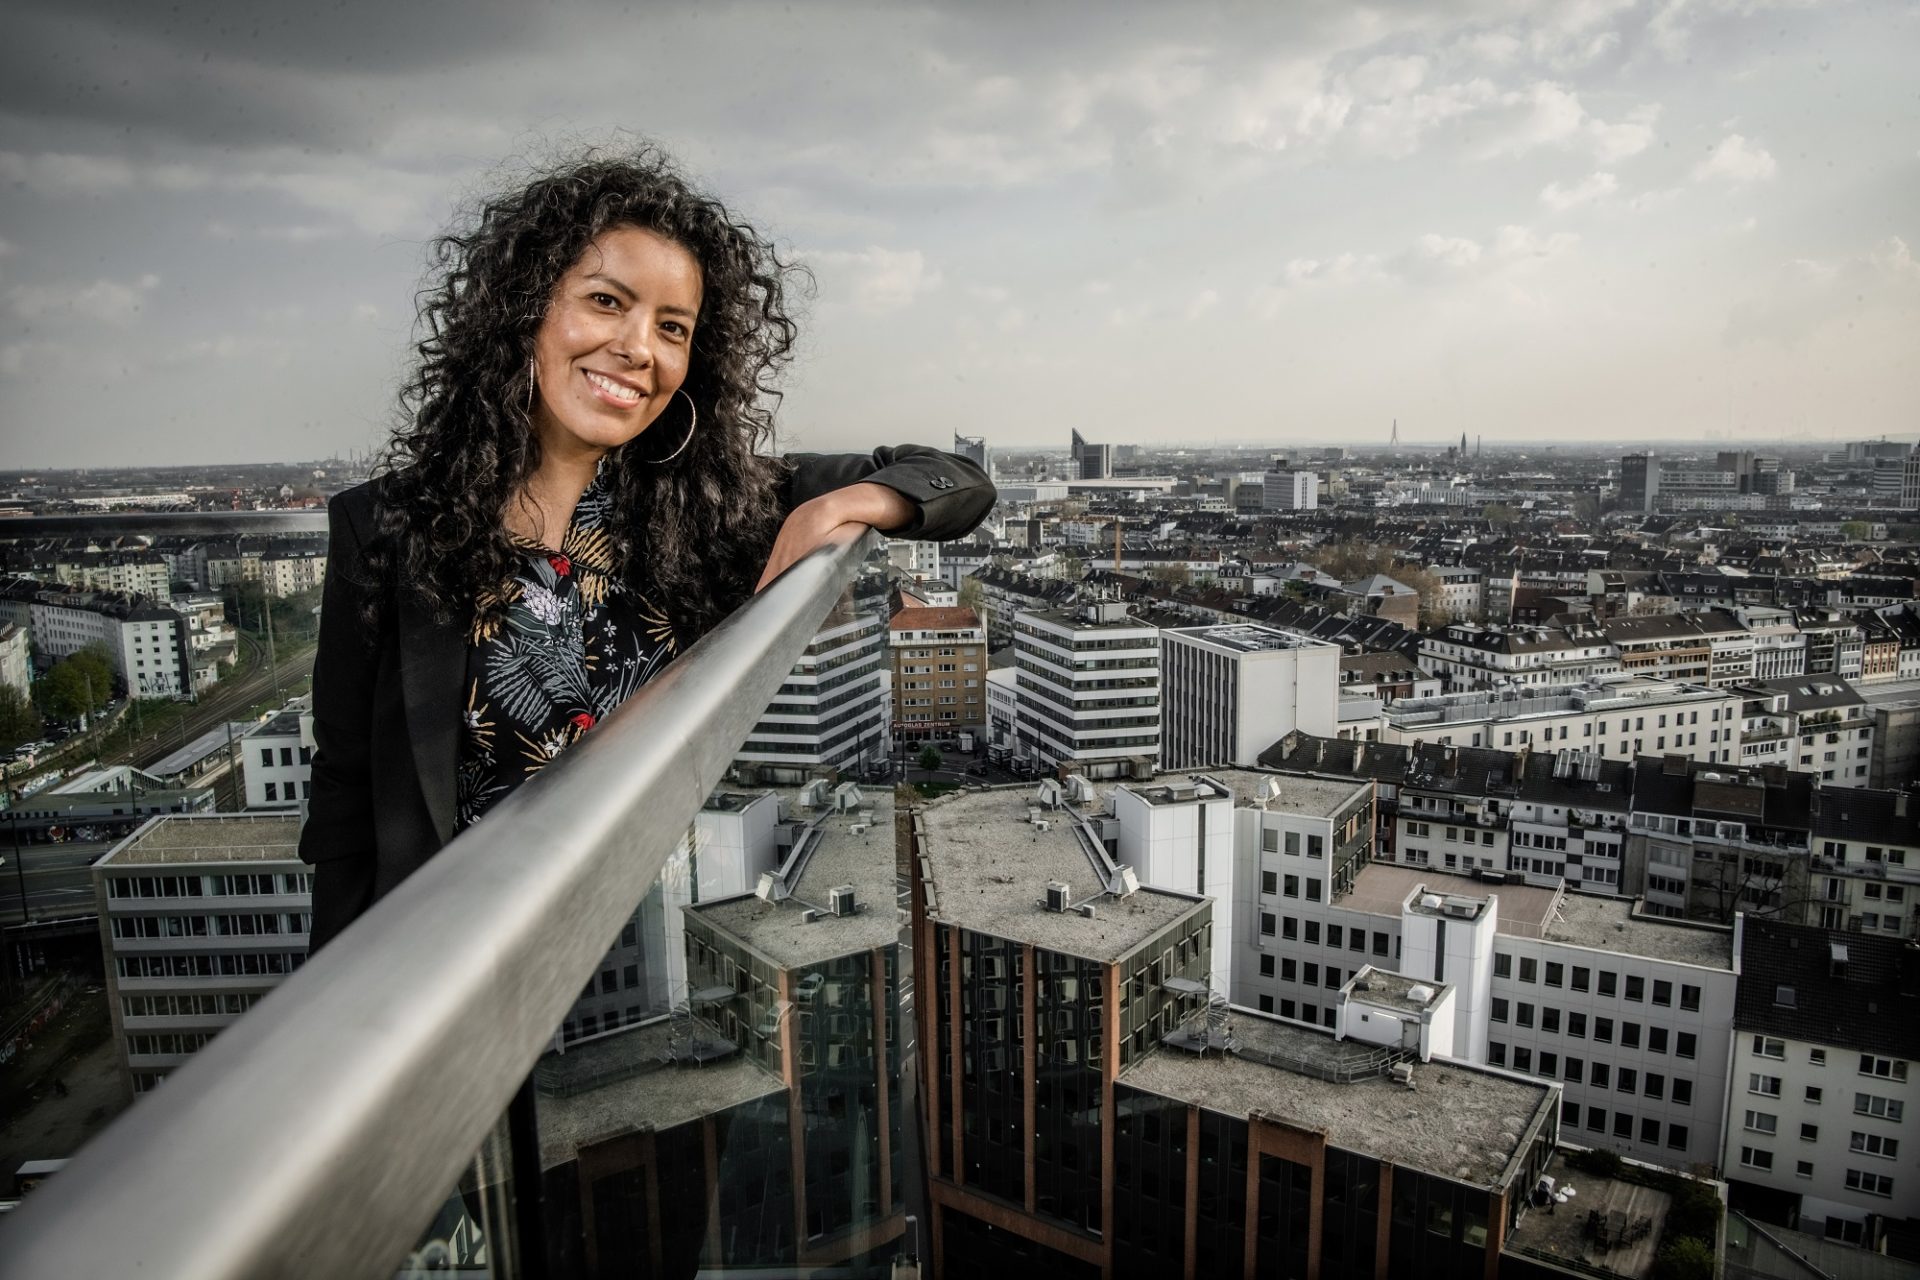 Unsere Autorin Karina Rodriguez auf der Dachterrasse eines Hauses an der Toulouse Allee. Dort hat Andreas Endermann sie fotografiert - bei ihrem Blick auf Düsseldorf.